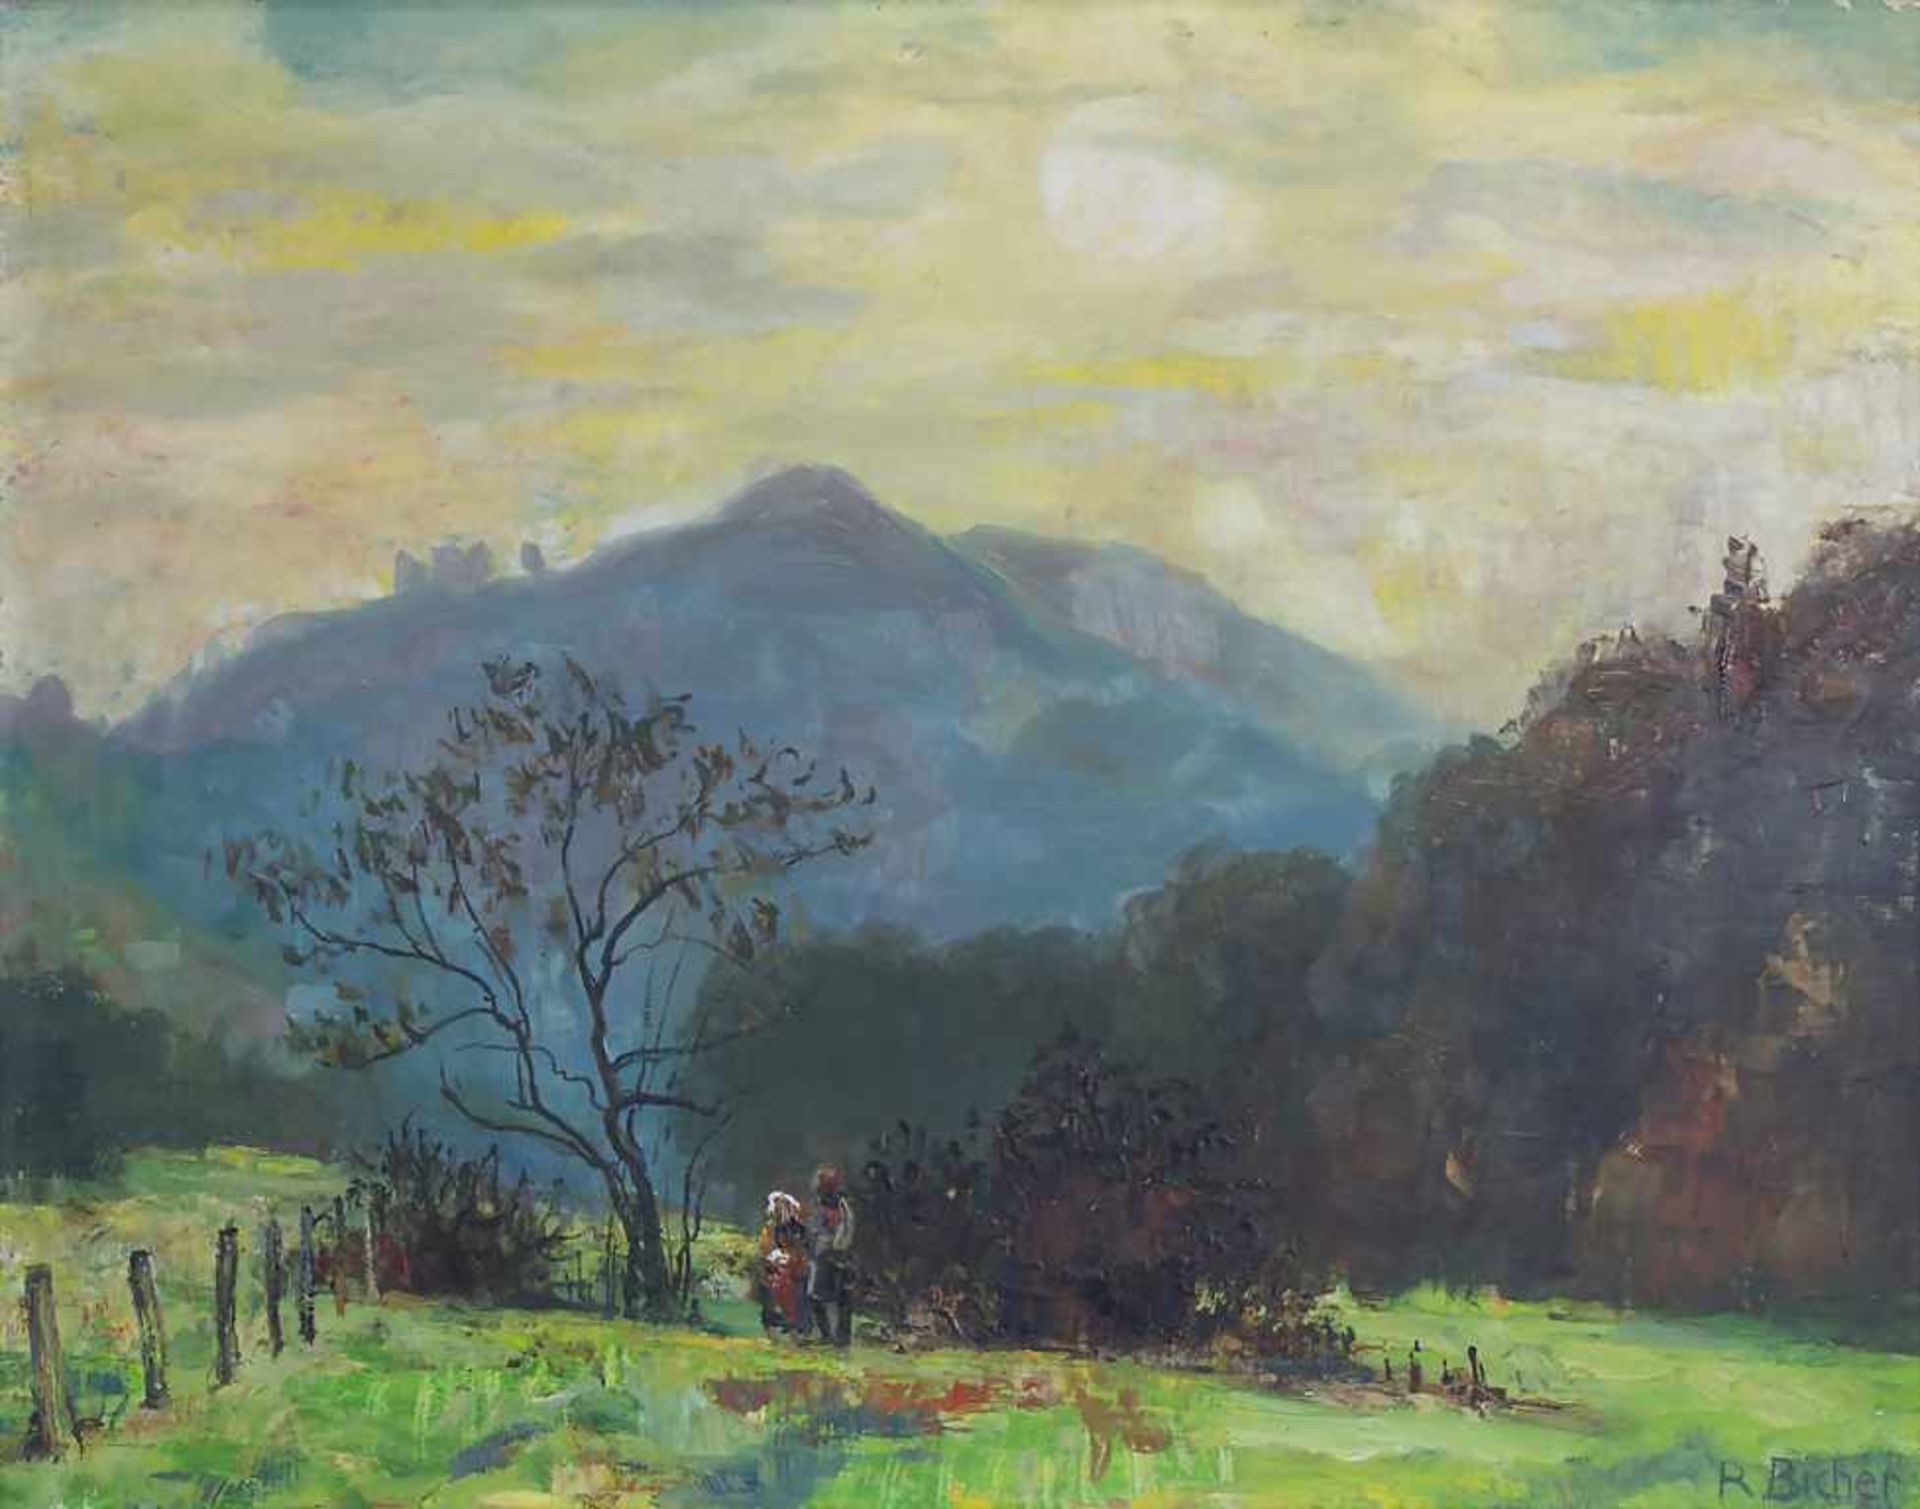 Reinhold Bicher (1895-1975), 'Hügellandschaft mit Figurenstaffage' / 'A hilly landscape with